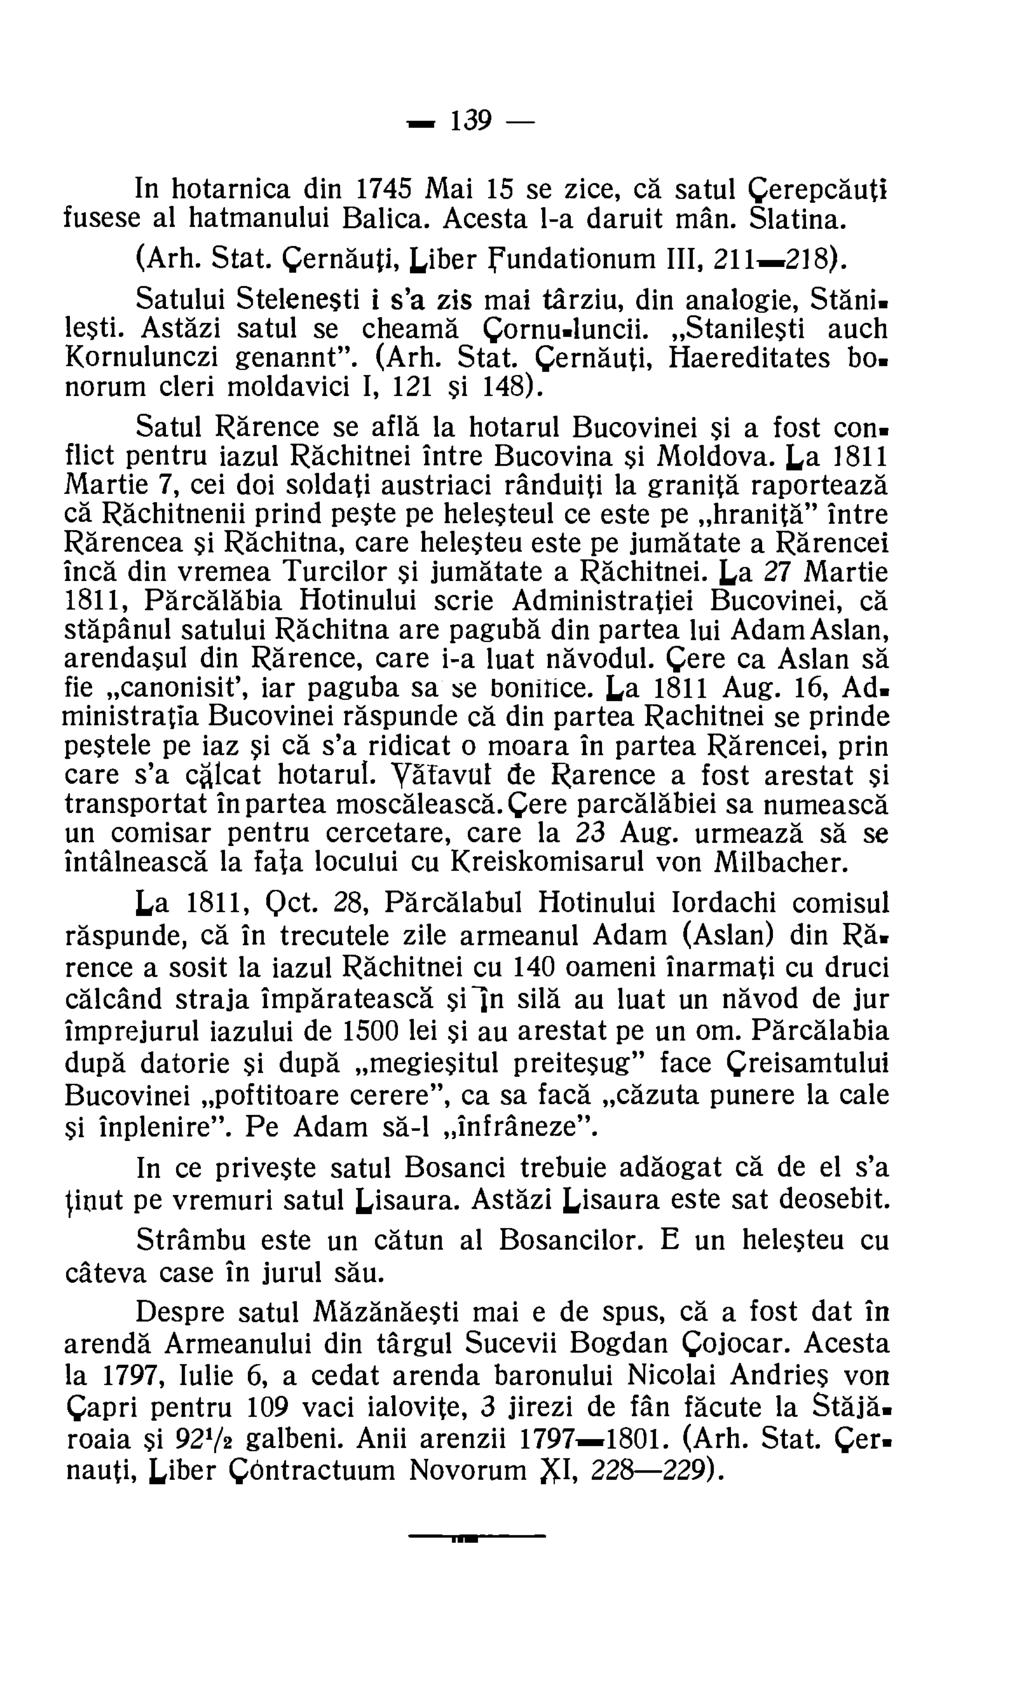 139 In hotarnica din 1745 Mai 15 se zice, ca satul Cerepcauti fusese al hatmanului Balica. Acesta 1-a daruit man. Slatina. (Arh. Stat. Cernauti, Liber Fundationum III, 211-218).